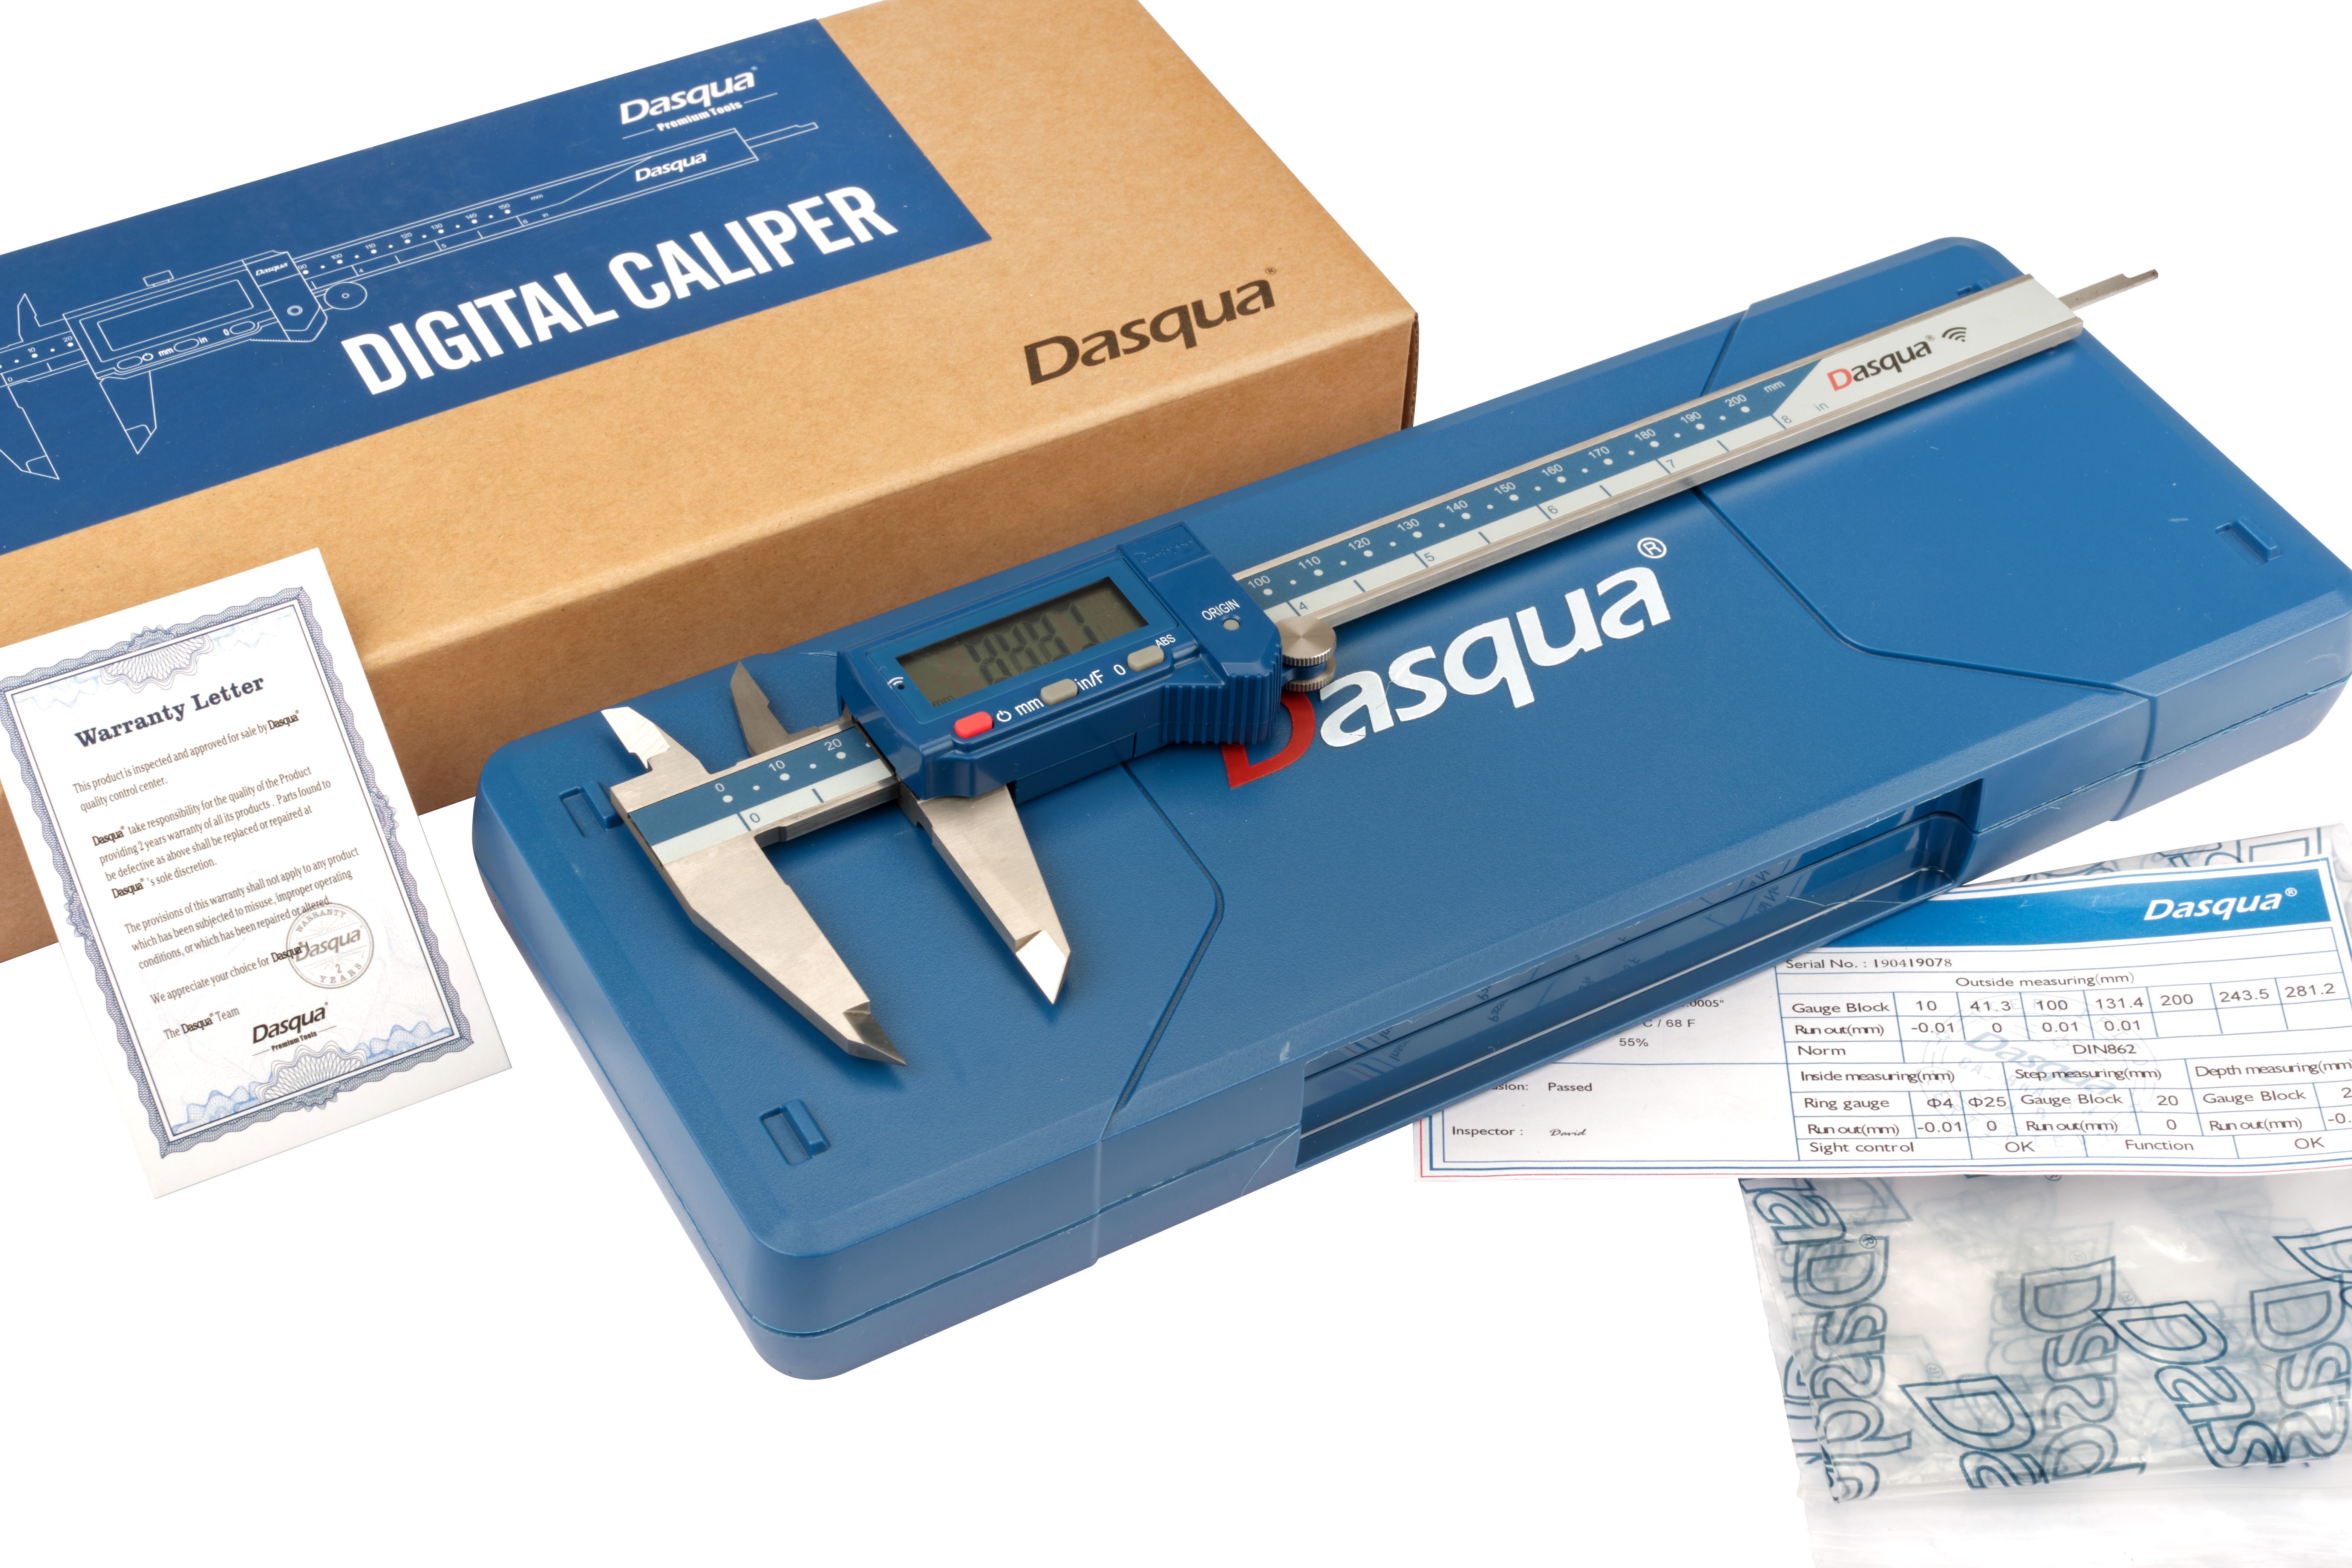 DASQUA 0-200MM/0-8" BLUETOOTH ABSOLUTE DIGITAL CALIPER (2025-1010)